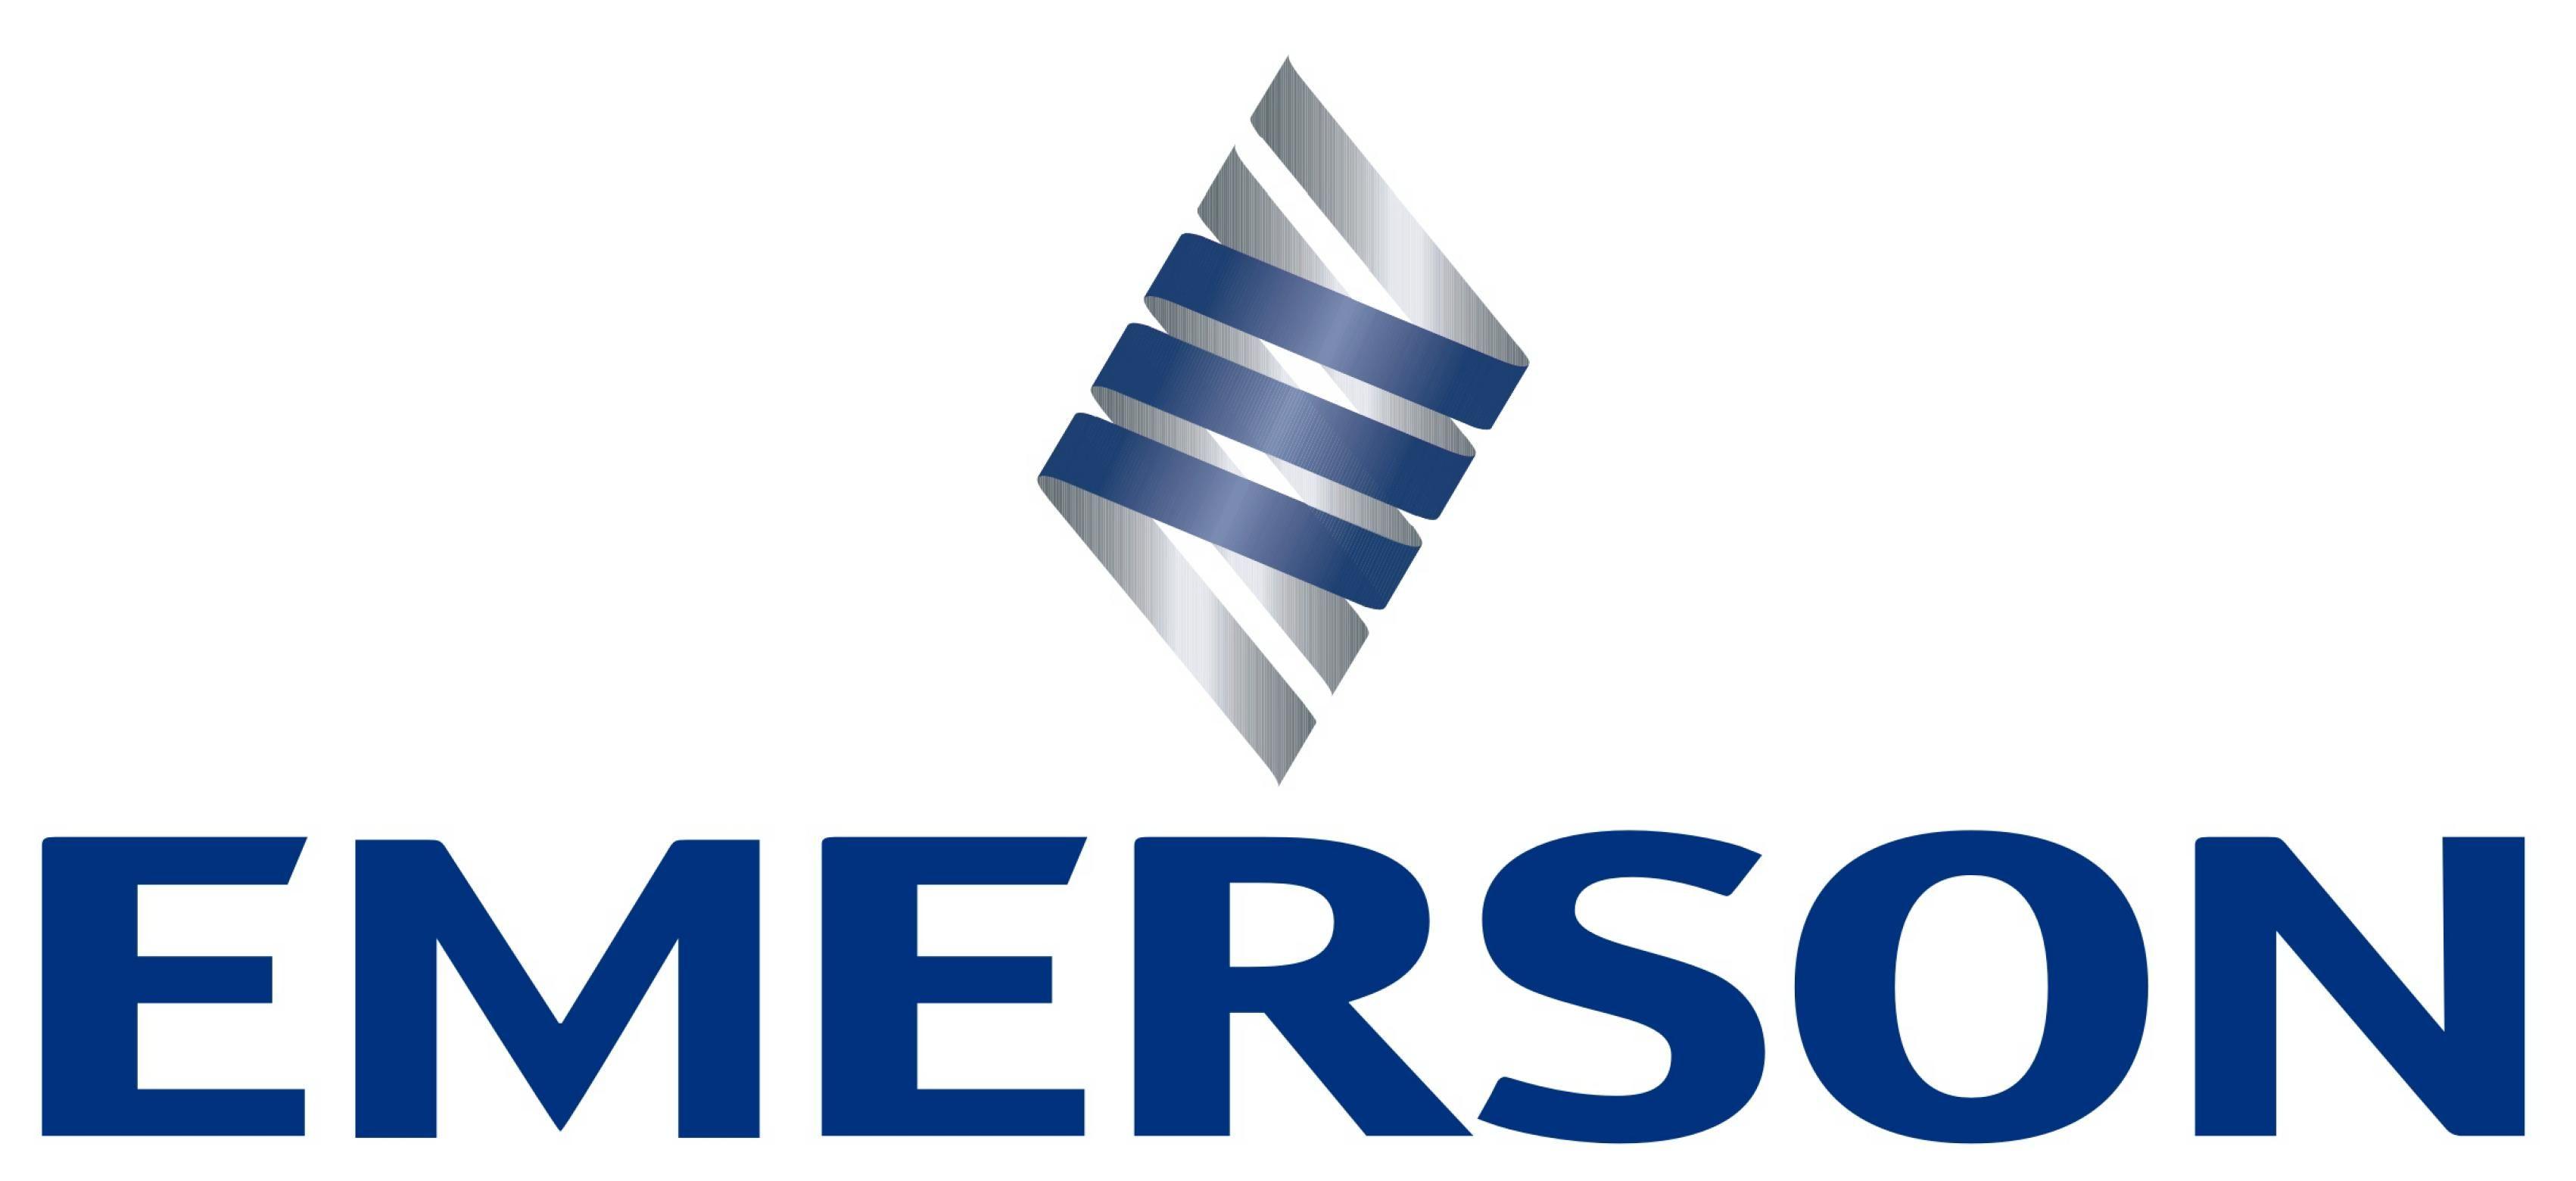 Emerson Electric Logo - Emerson Electric Logo